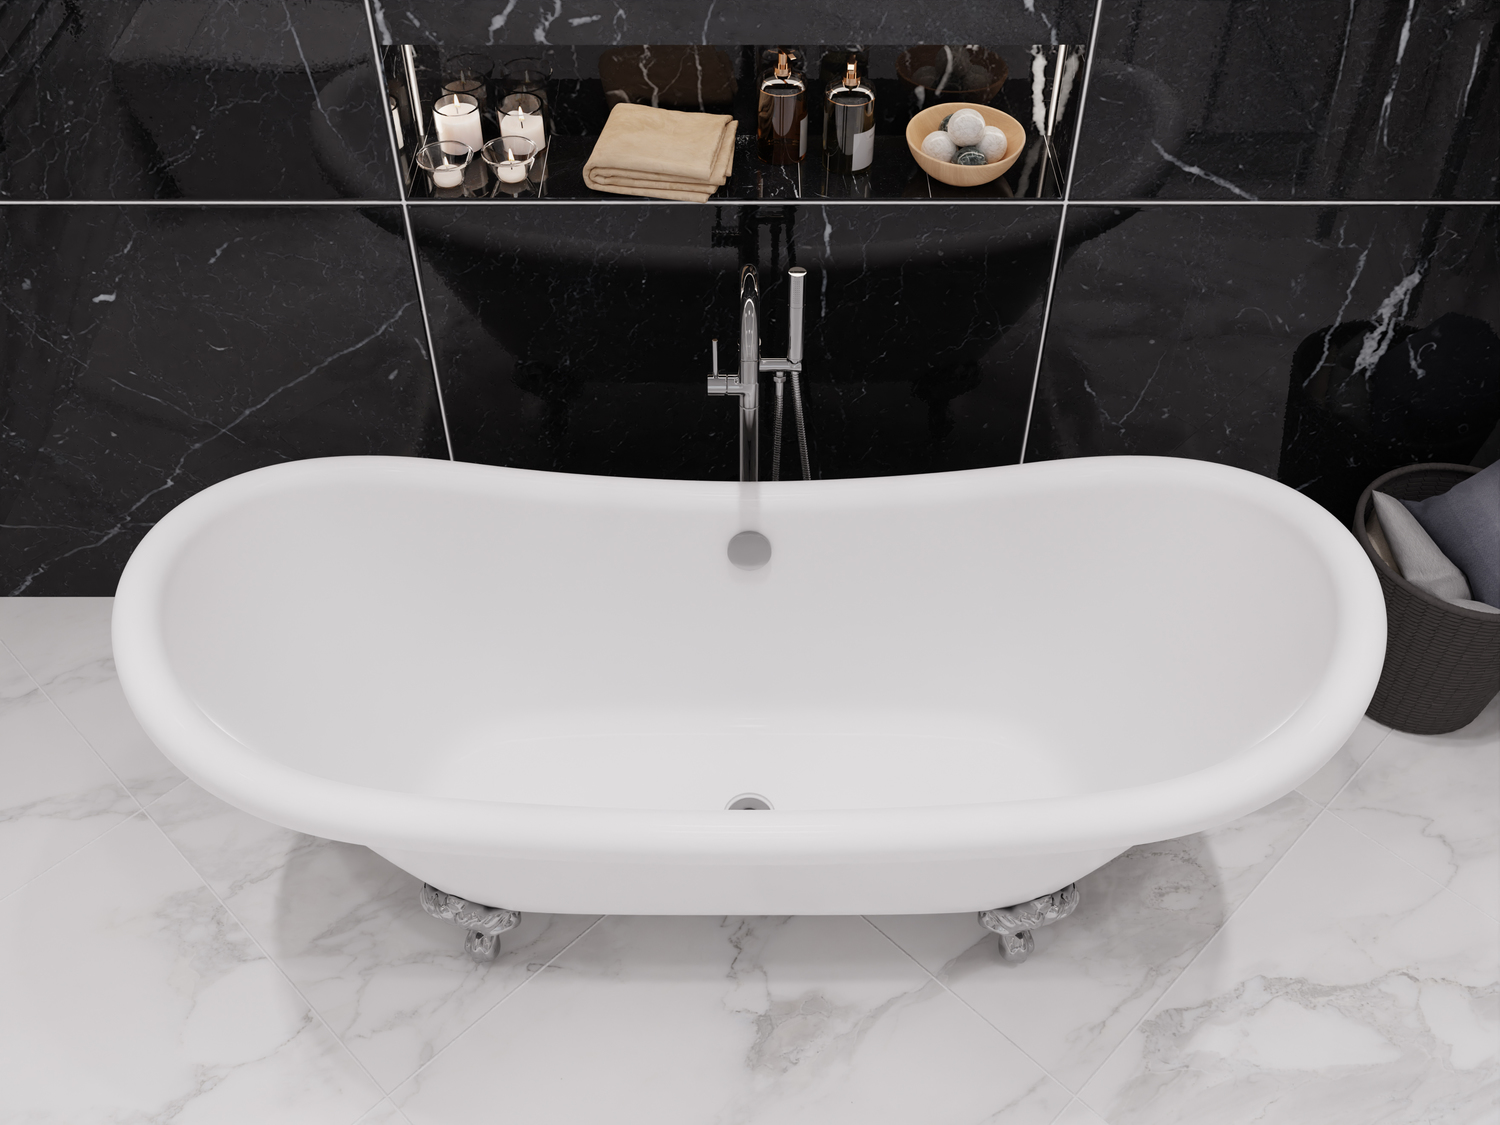 bathtub fitting in bathroom Anzzi BATHROOM - Bathtubs - Freestanding Bathtubs - One Piece - Acrylic White